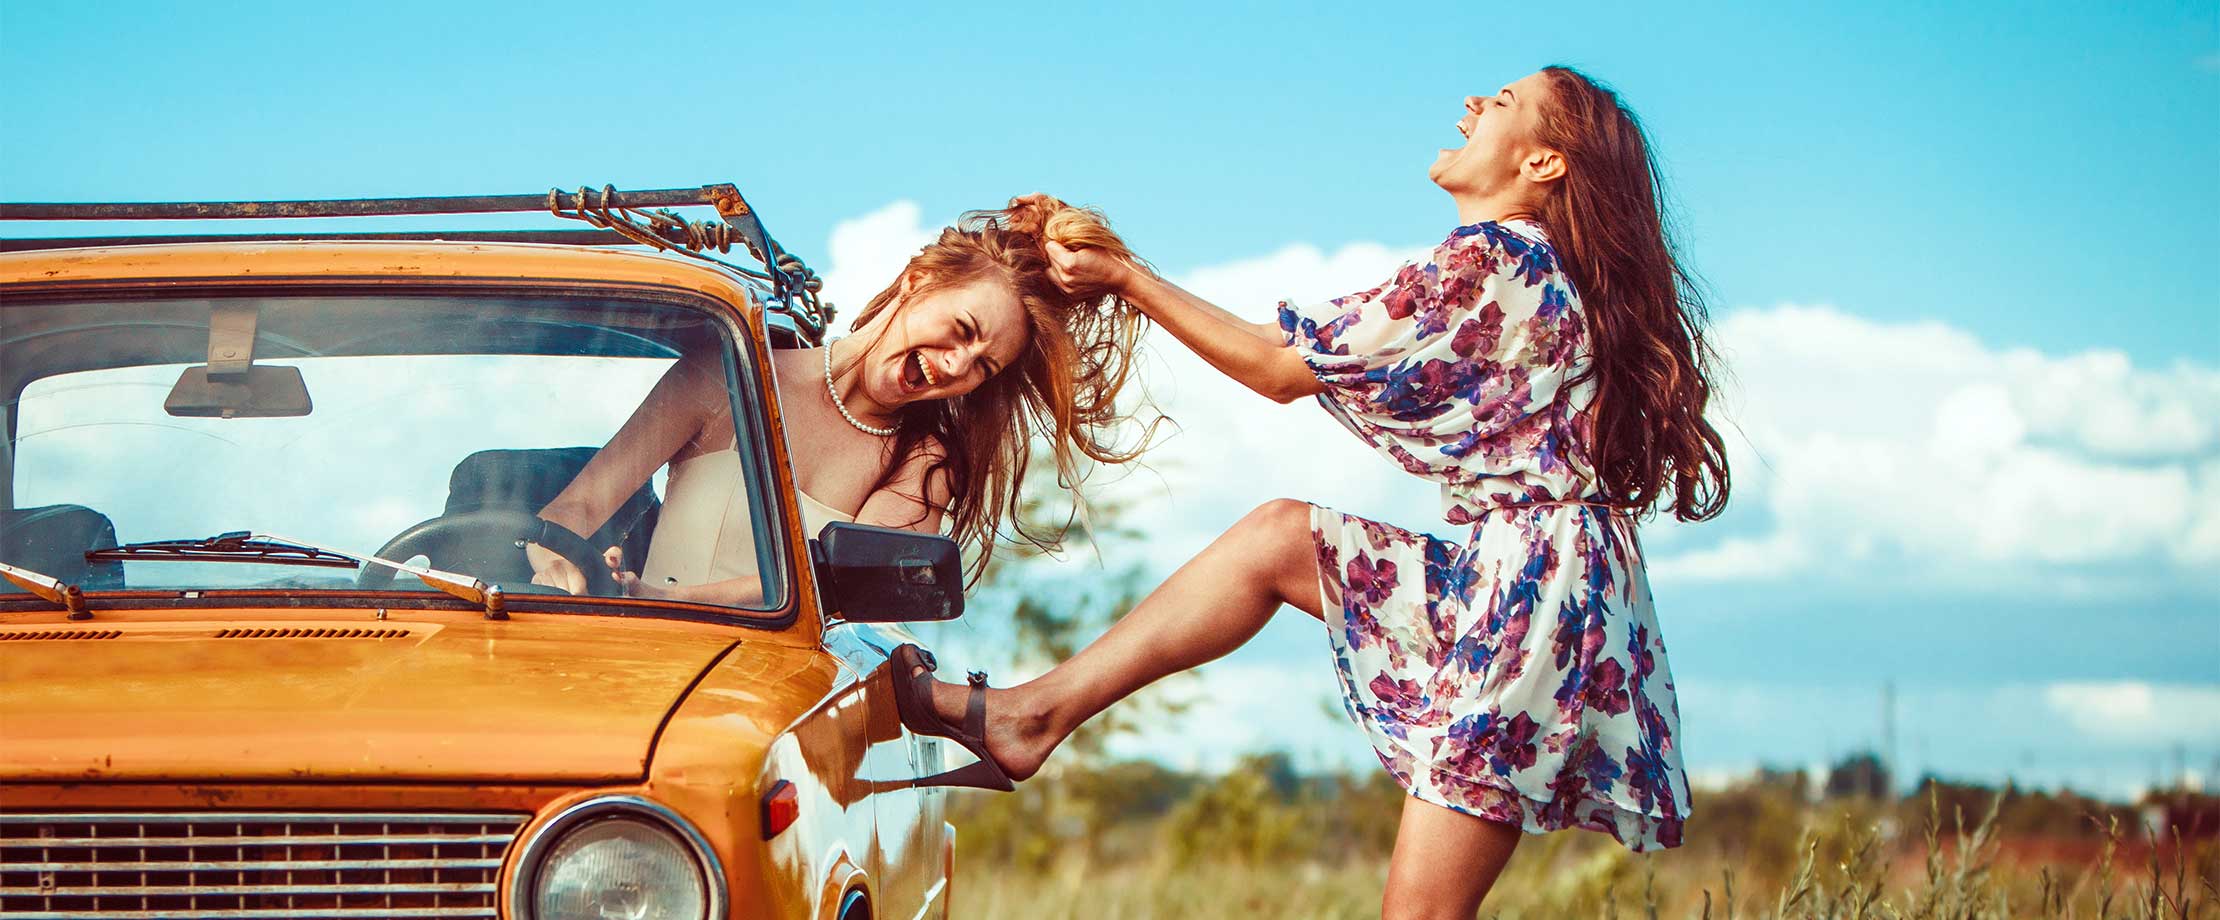 Eine junge Frau im Sommerkleid zerrt an den Haaren einer anderen Frau, die in einem gelben Auto sitzt. Die beiden haben die Augen geschlossen und den Mund zum Schreien geöffnet.